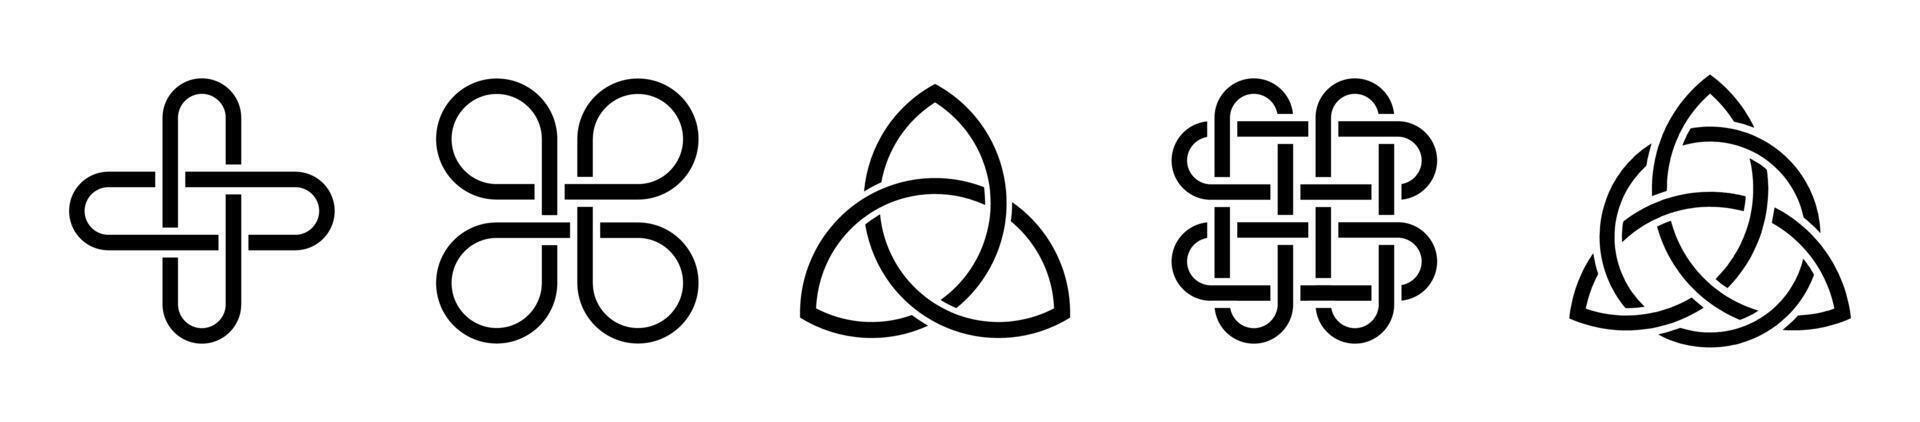 keltisch knoop pictogrammen. eindeloos knoop symbolen. keltisch drie-eenheid knopen verzameling. vector